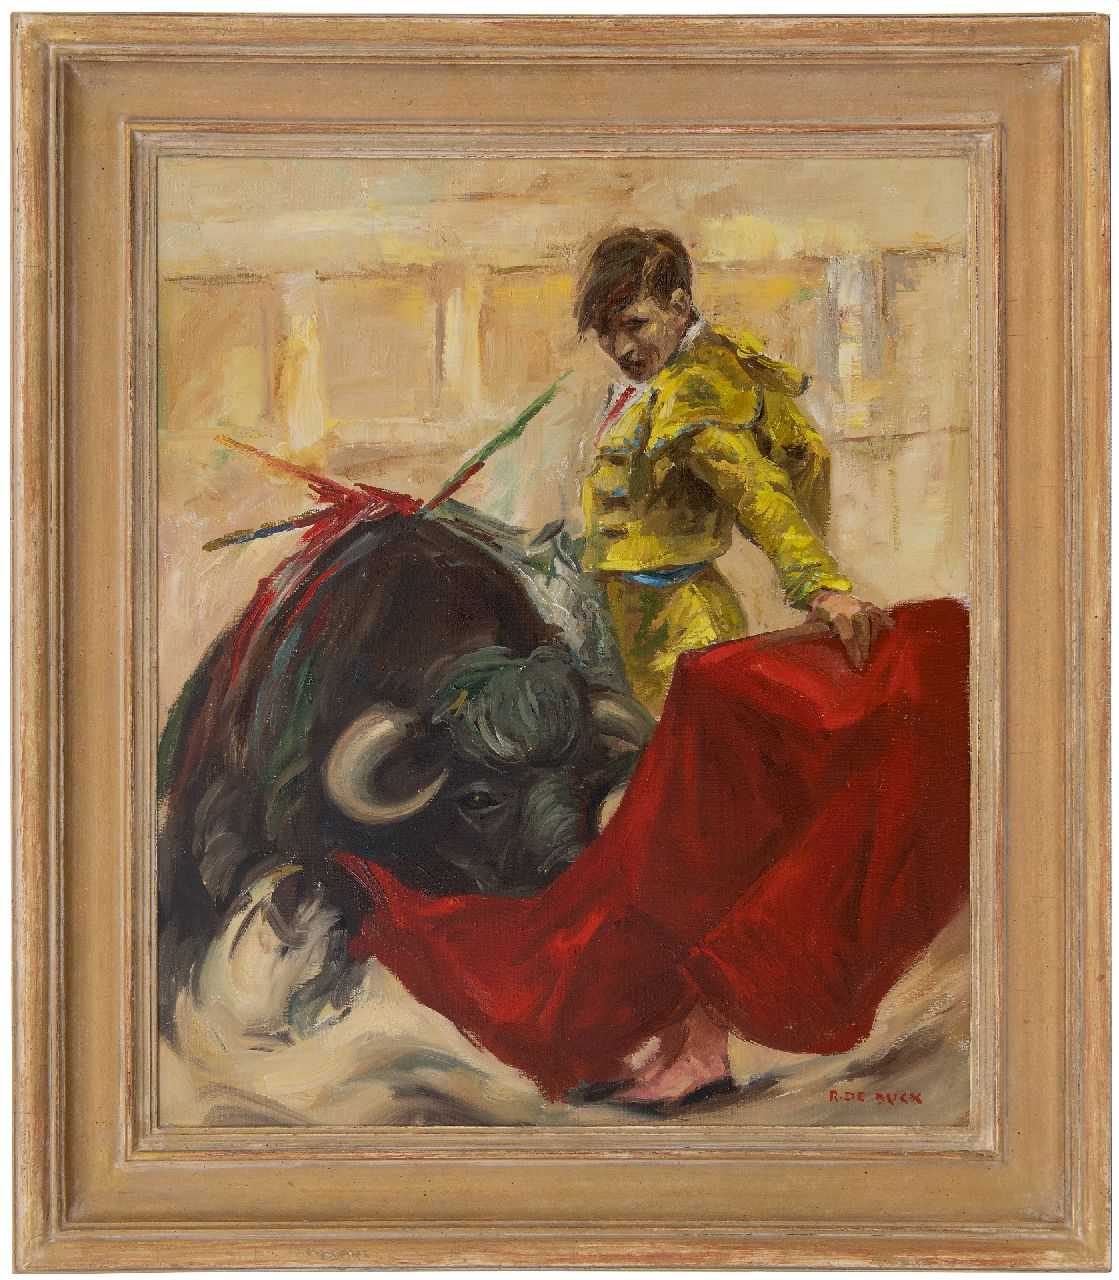 Buck R. de | Raphaël de Buck | Schilderijen te koop aangeboden | Stierenvechter, olieverf op doek 60,0 x 49,8 cm, gesigneerd rechtsonder